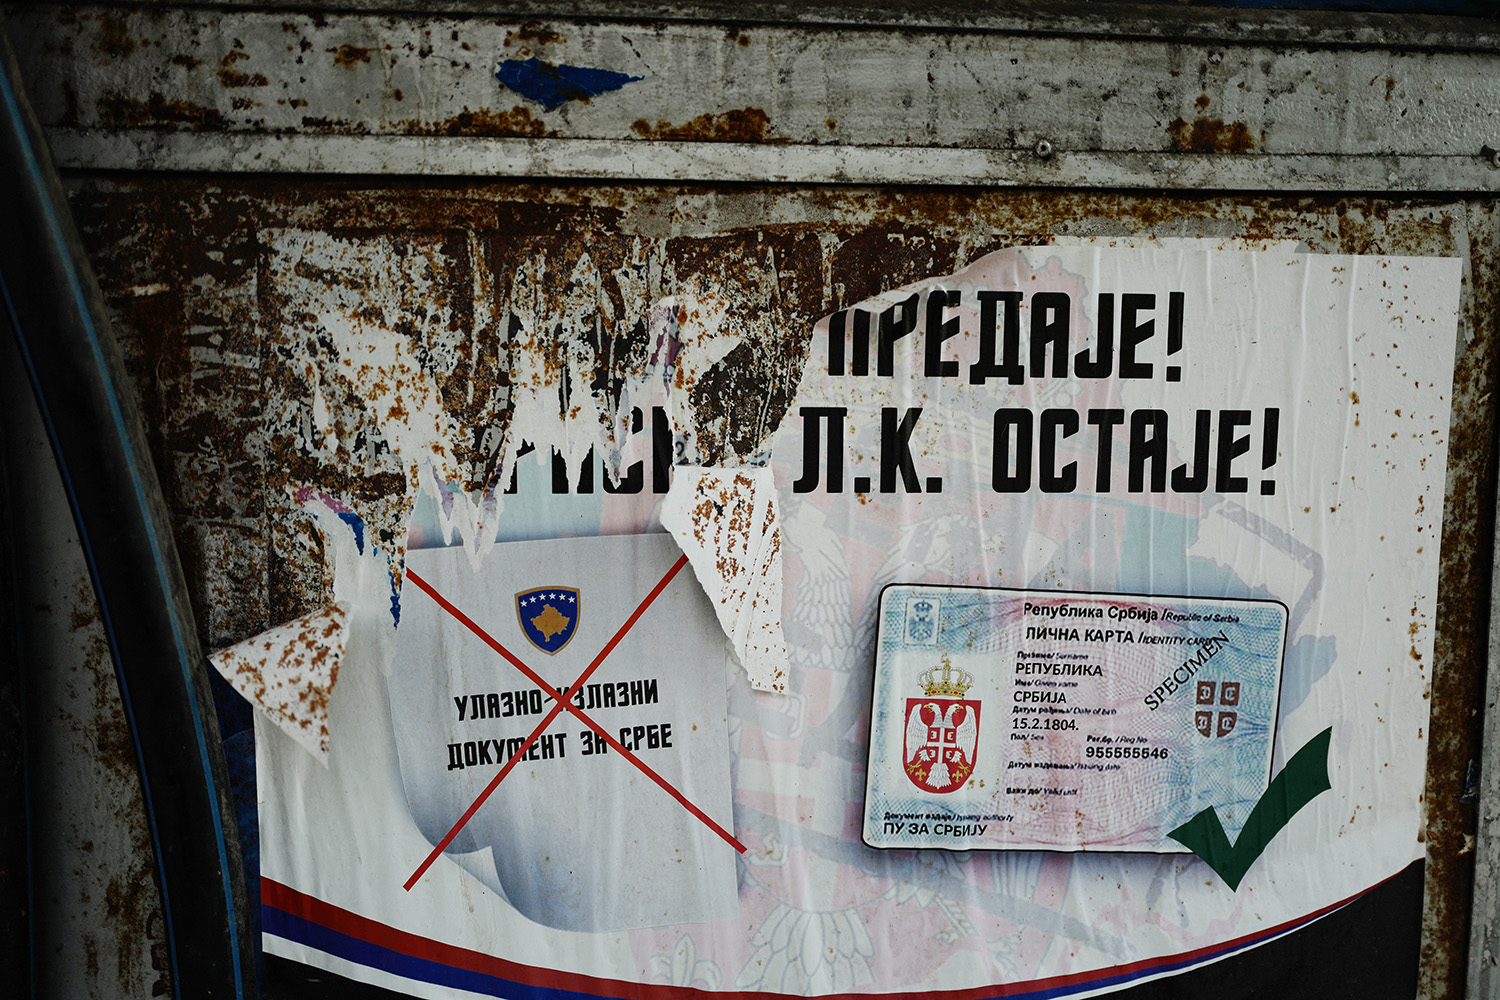 Un cartel en Mitrovica advierte a los serbios de etnia que no cambien su documentación por la exigida por el gobierno de Kosovo.